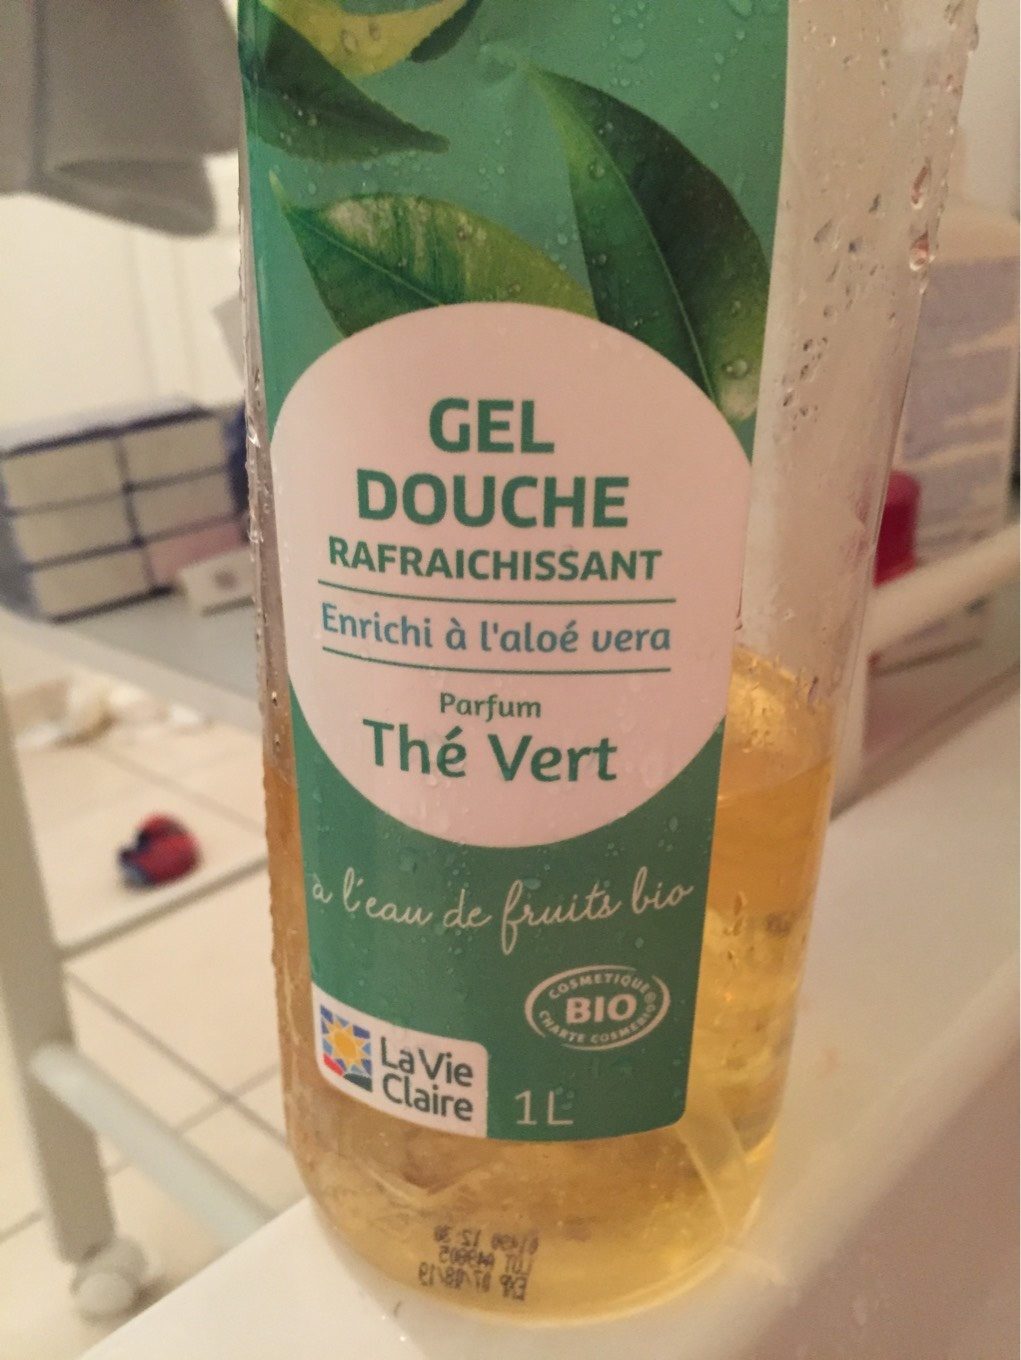 Gel douche the vert - Produkt - fr